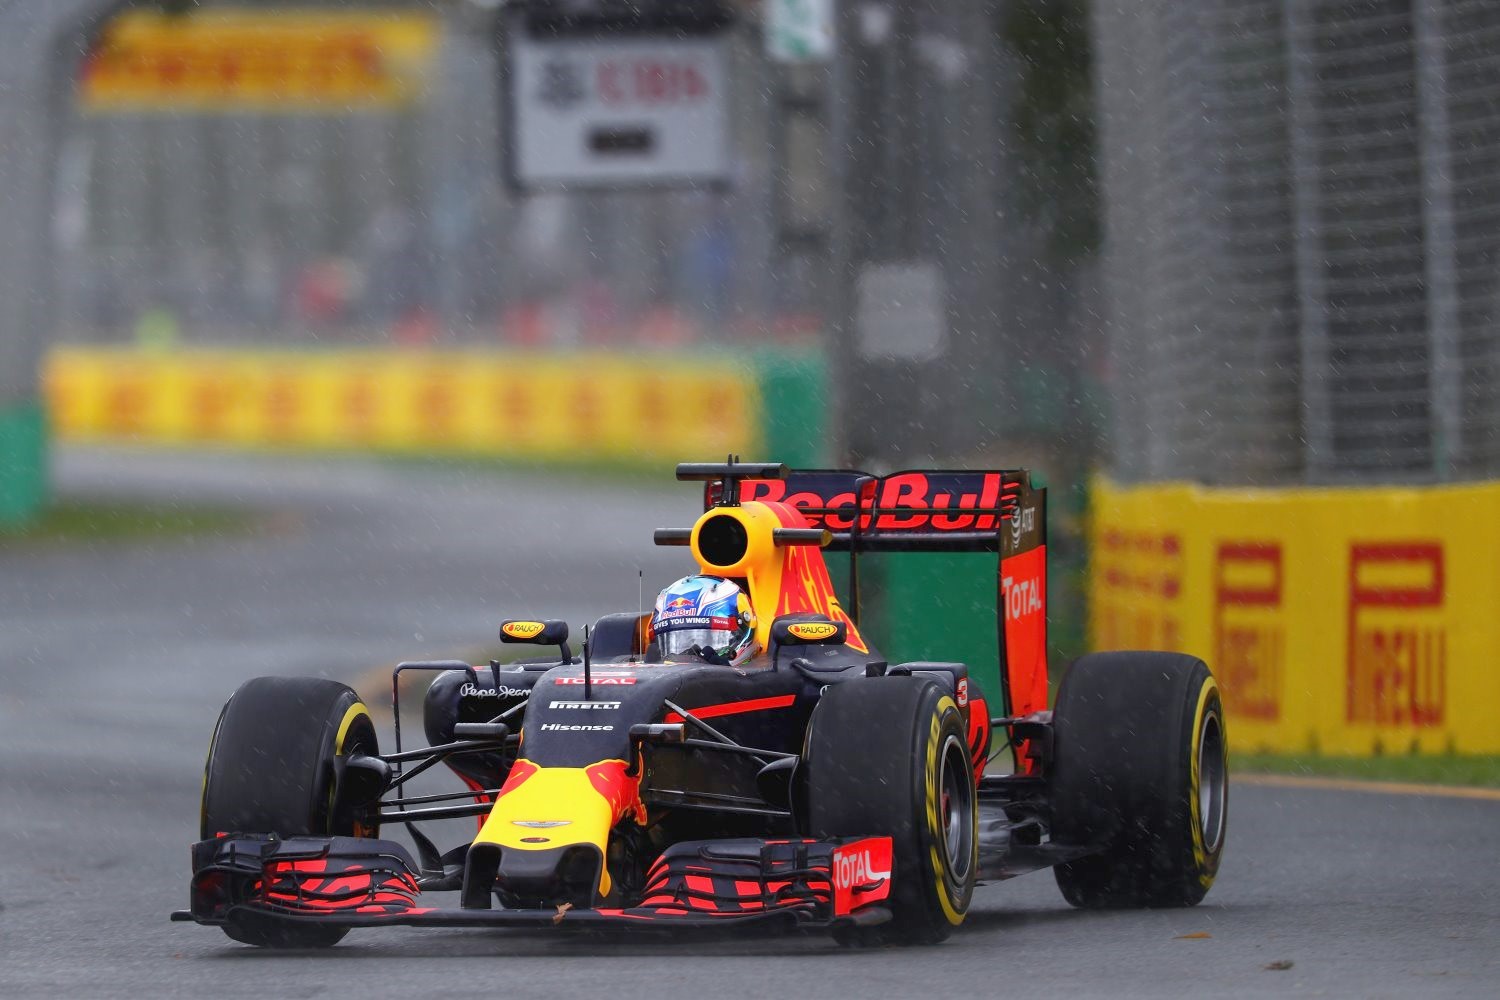 Daniel Ricciardo brought the Red Bull home 4th